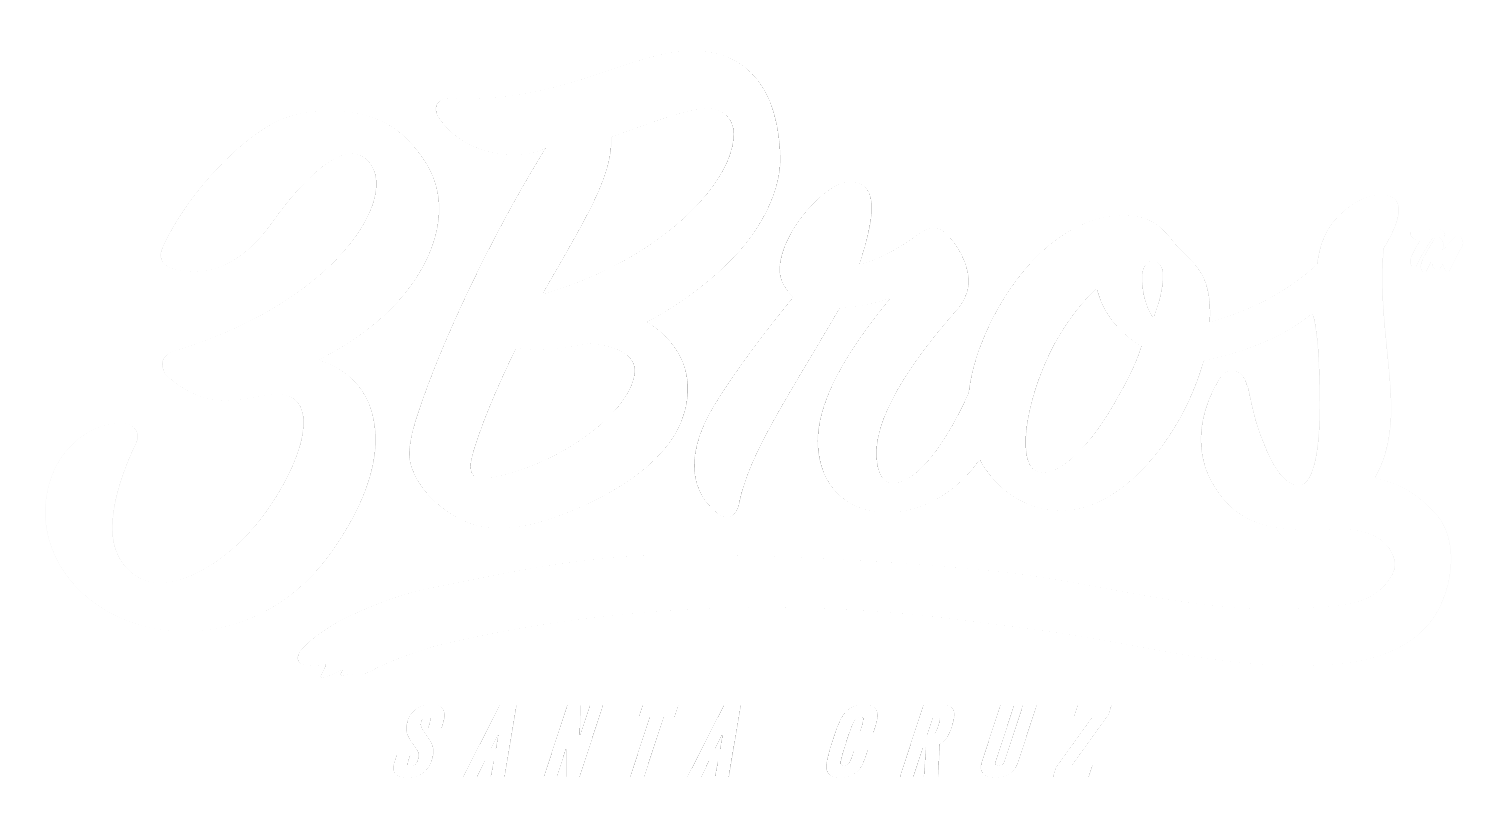 3 Bros Santa Cruz